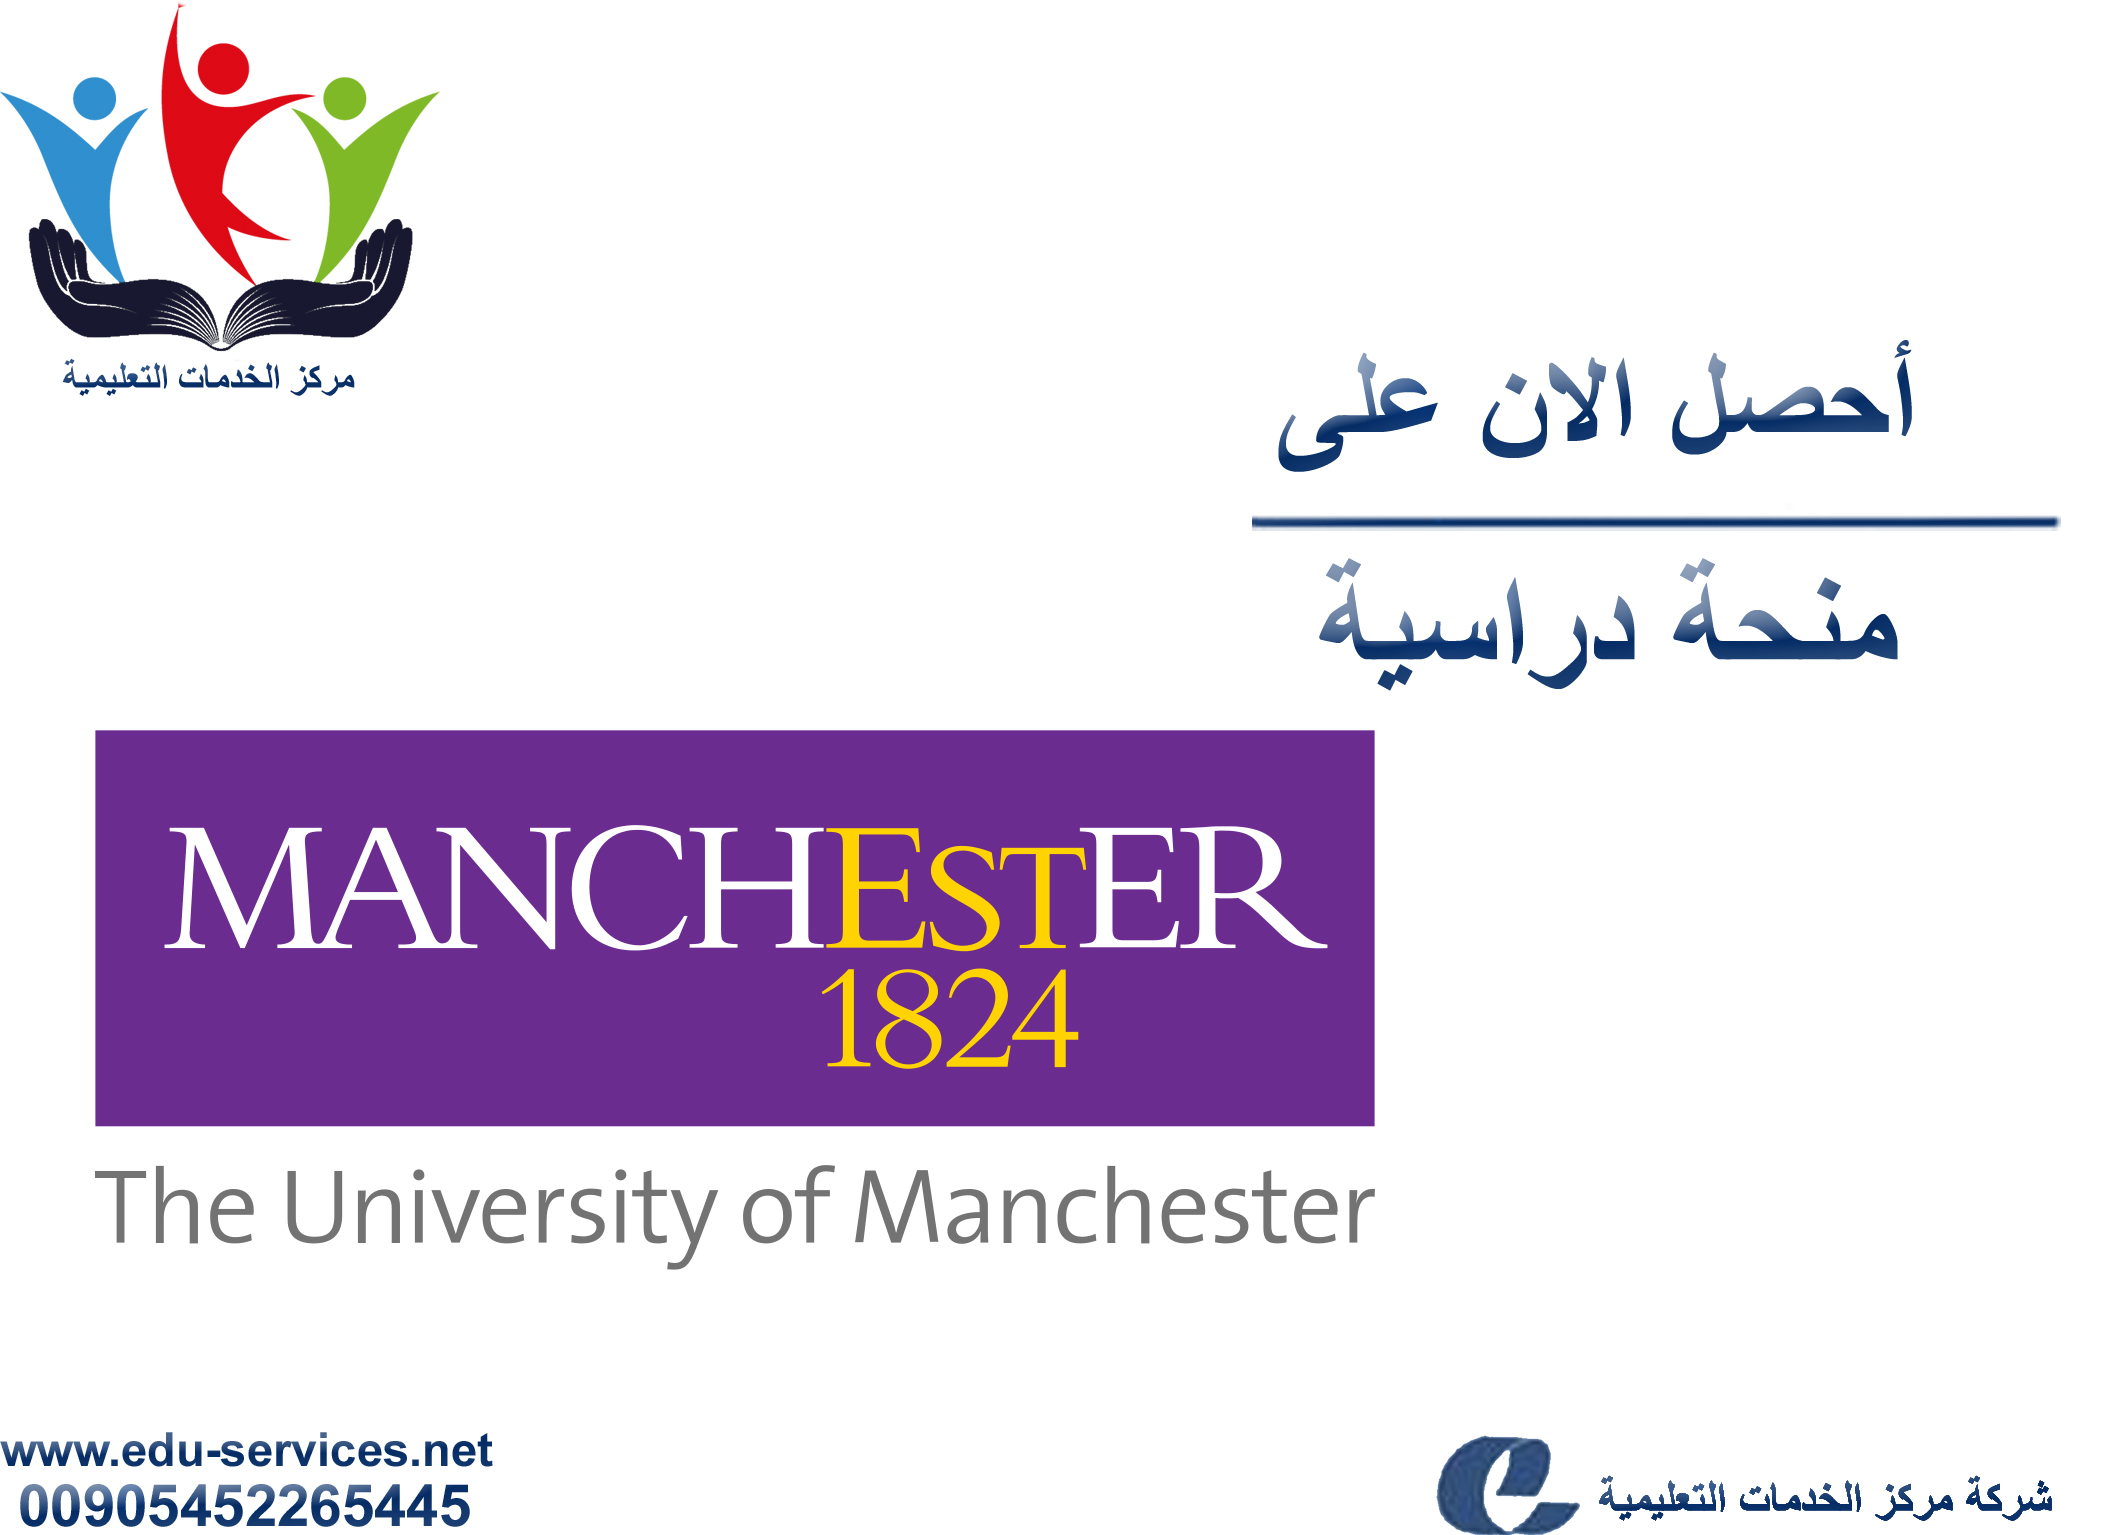 منح دراسية لدرجة الماجستير من Manchester في المملكة المتحدة للعام 2018